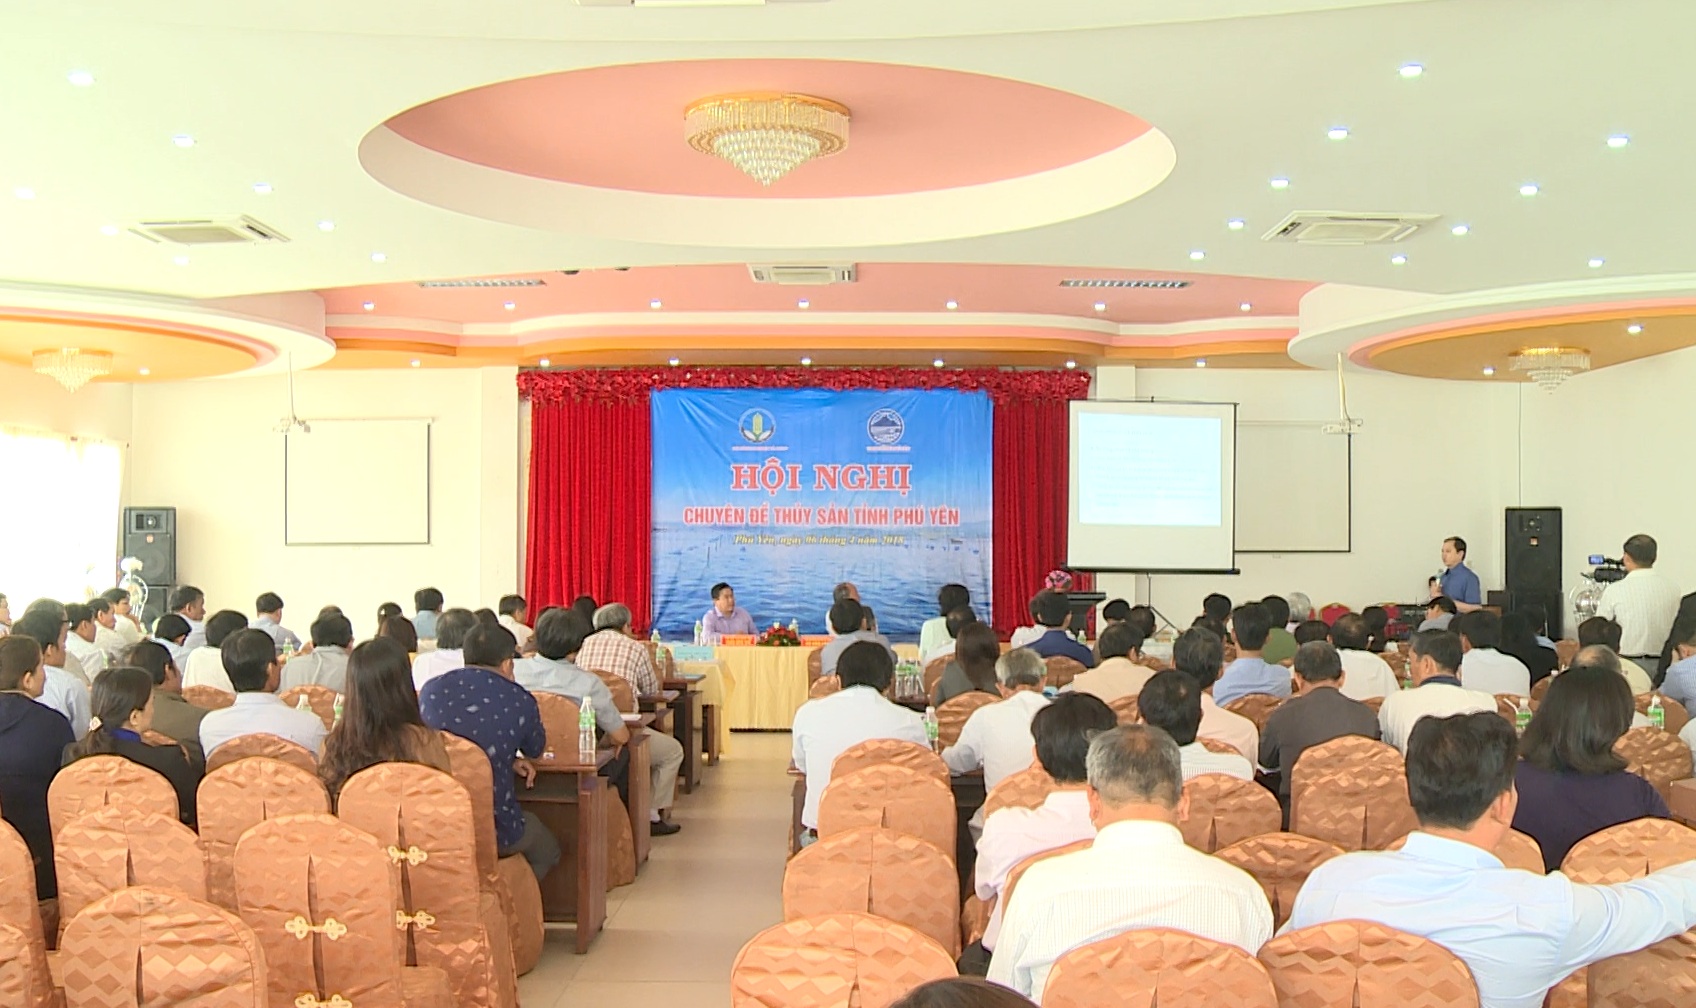 Hội nghị chuyên đề thủy sản tỉnh Phú Yên